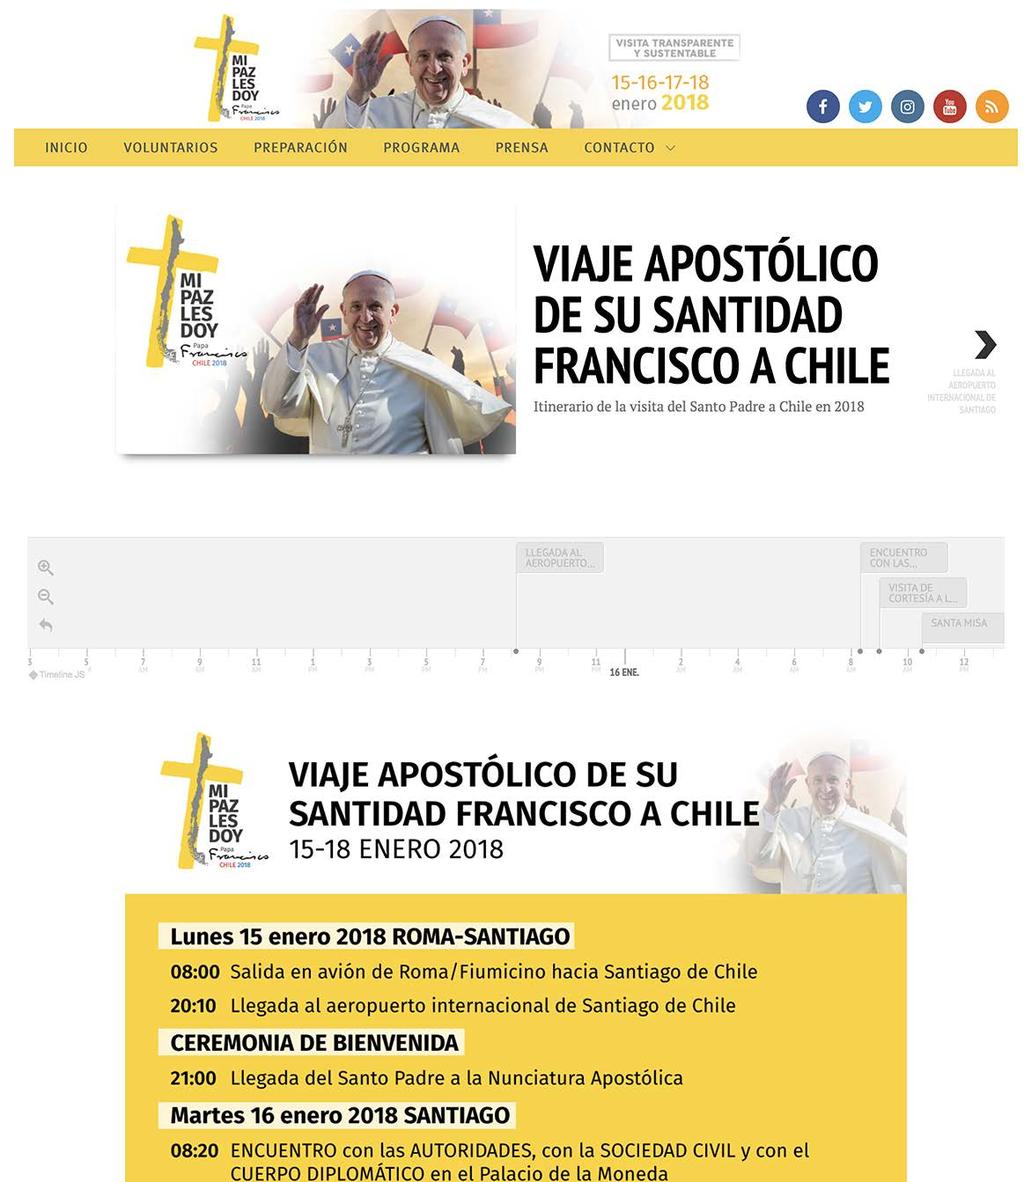 Comisión Nacional Visita Papa Francisco a Chile FRANCISCOENCHILE.CL Creación de logo, WEB y aplicaciones generales. Septiembre 2017.